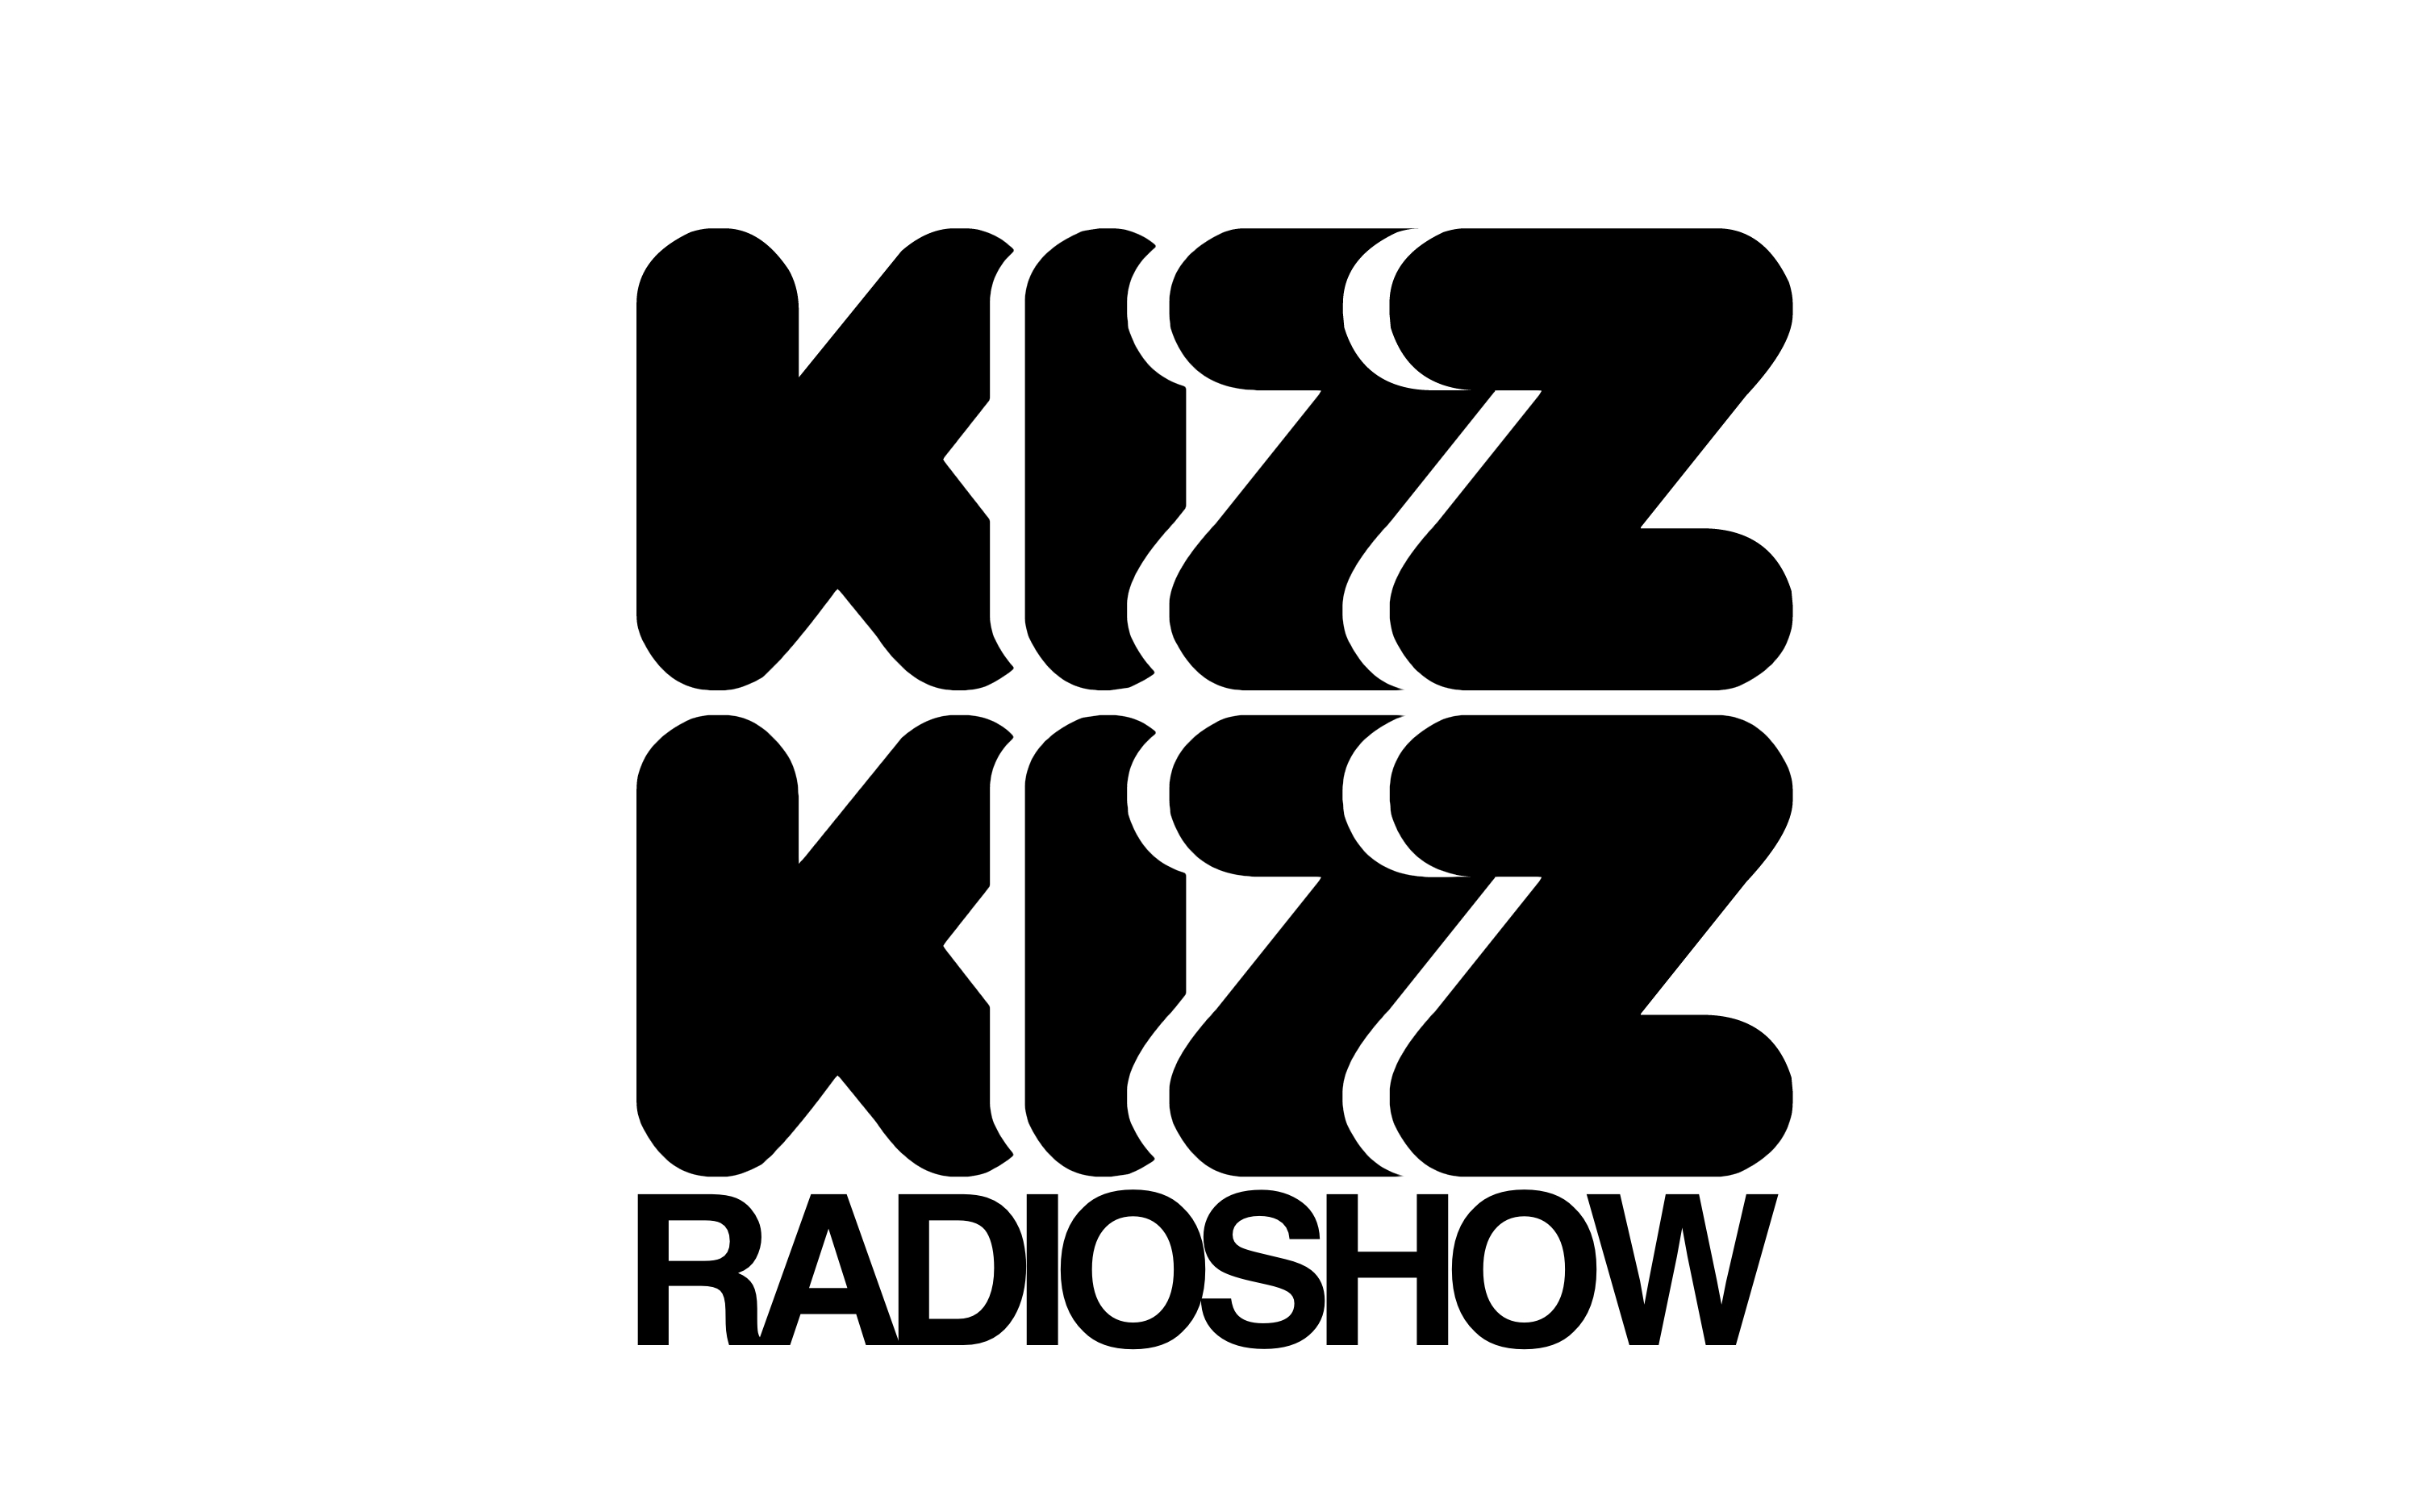 KizzKizz Radioshow